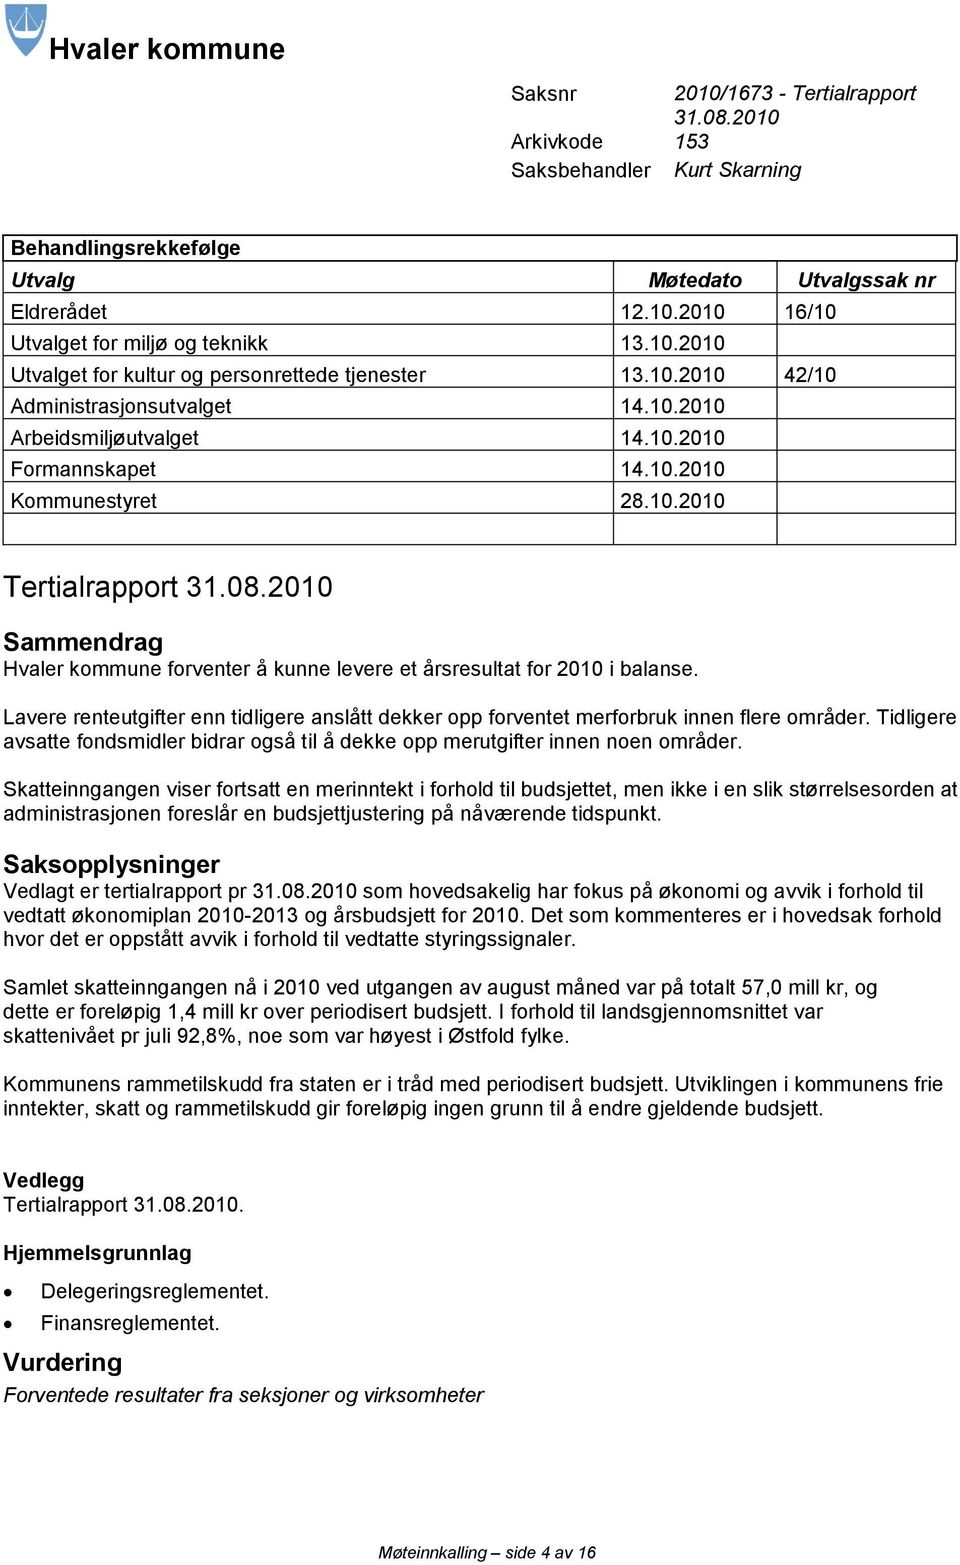 08.2010 Sammendrag Hvaler kommune forventer å kunne levere et årsresultat for 2010 i balanse. Lavere renteutgifter enn tidligere anslått dekker opp forventet merforbruk innen flere områder.